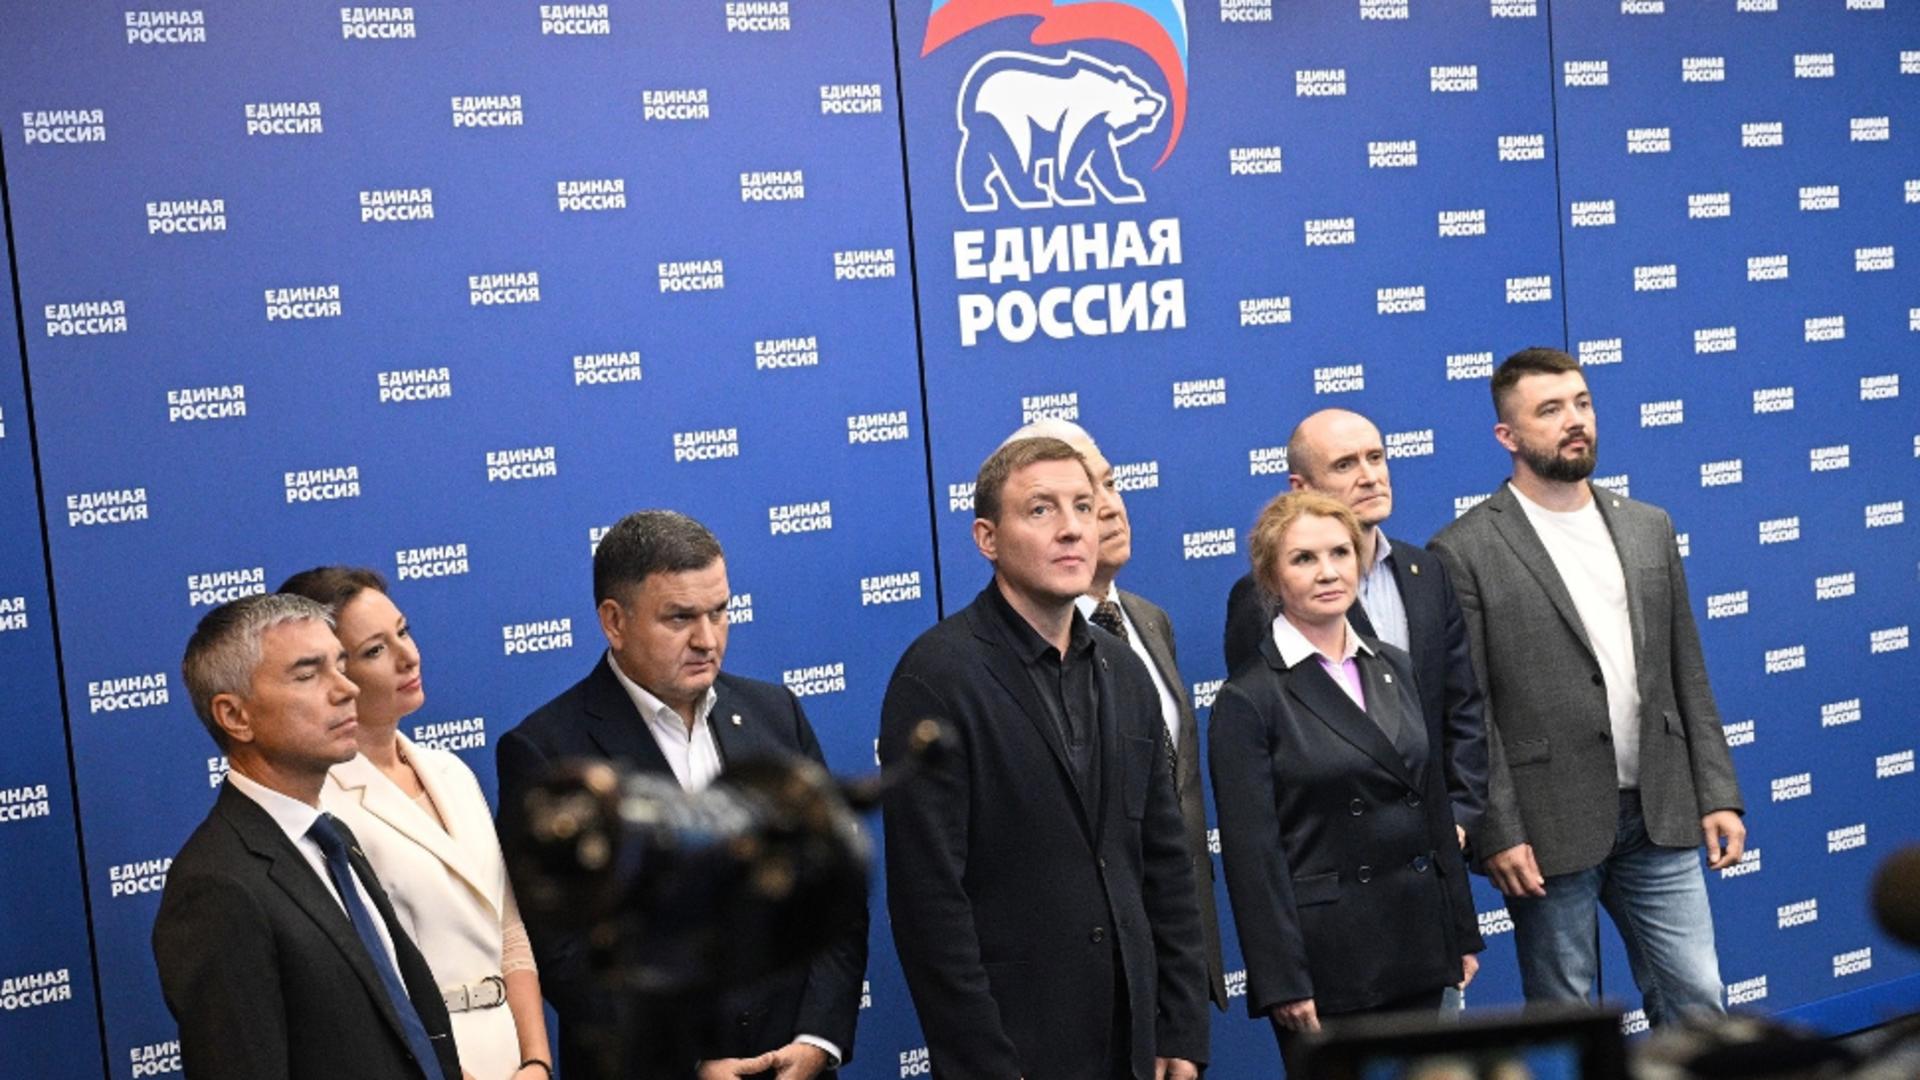 Moscova a anunțat victoria partidului lui Putin în teritoriile ocupate din Ucraina. UE nu s-a lăsat convinsă și a transmis un avertismet dur